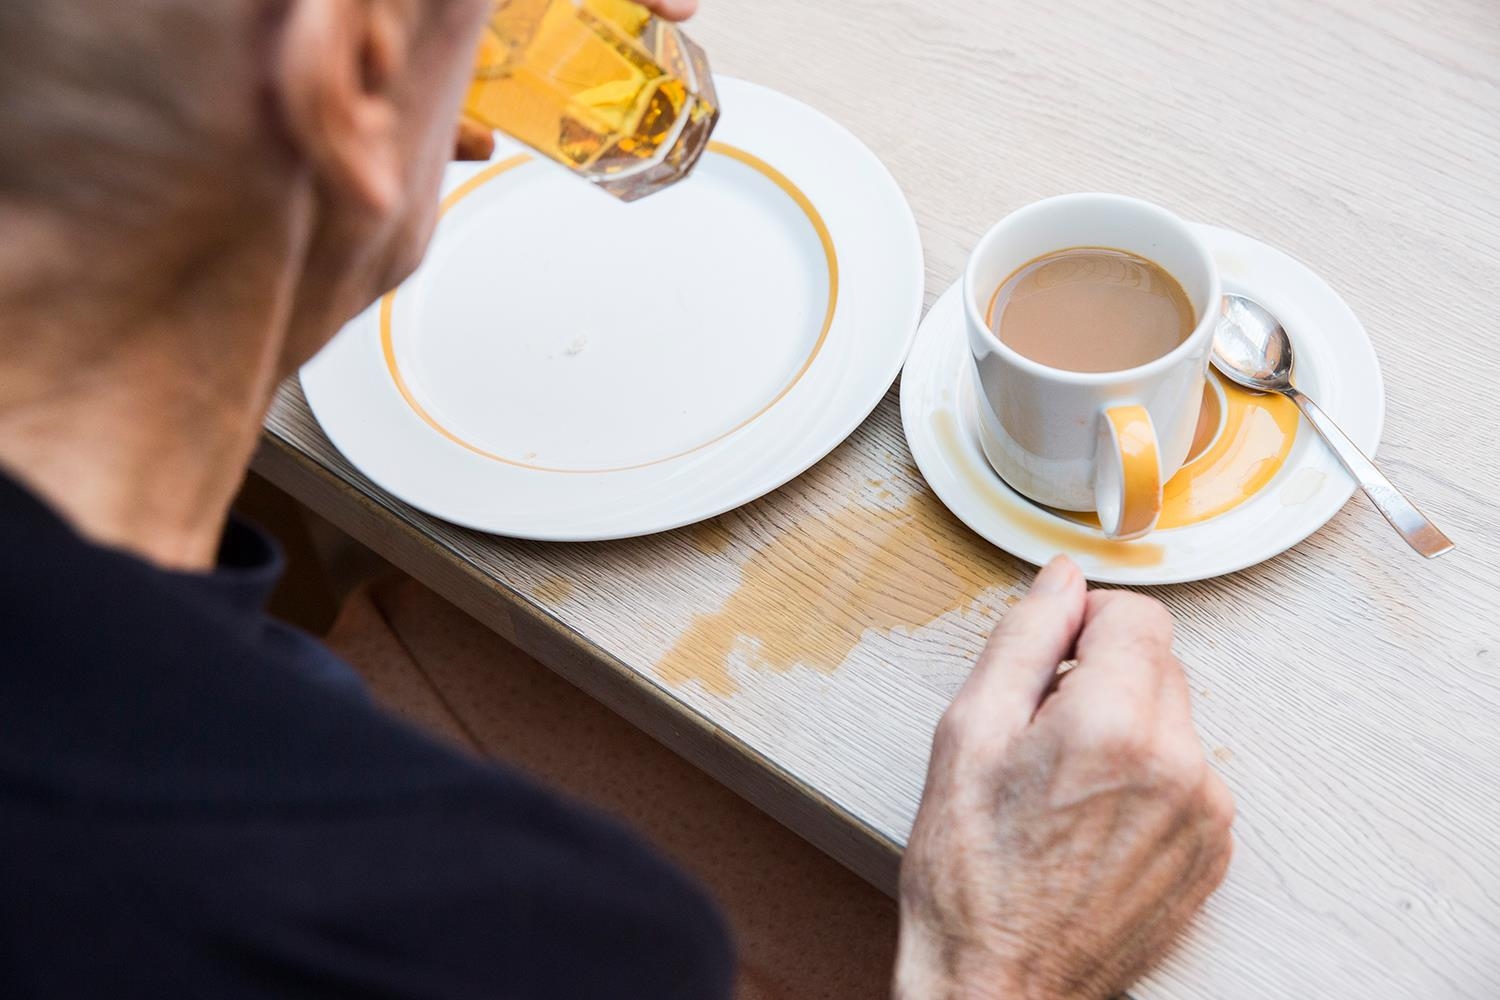 Die Hände eines älteren Menschen neben einer zum Teil verschütteten Tasse mit Kaffee (Deutscher Caritasverband e. V. / Sebastian Pfütze)